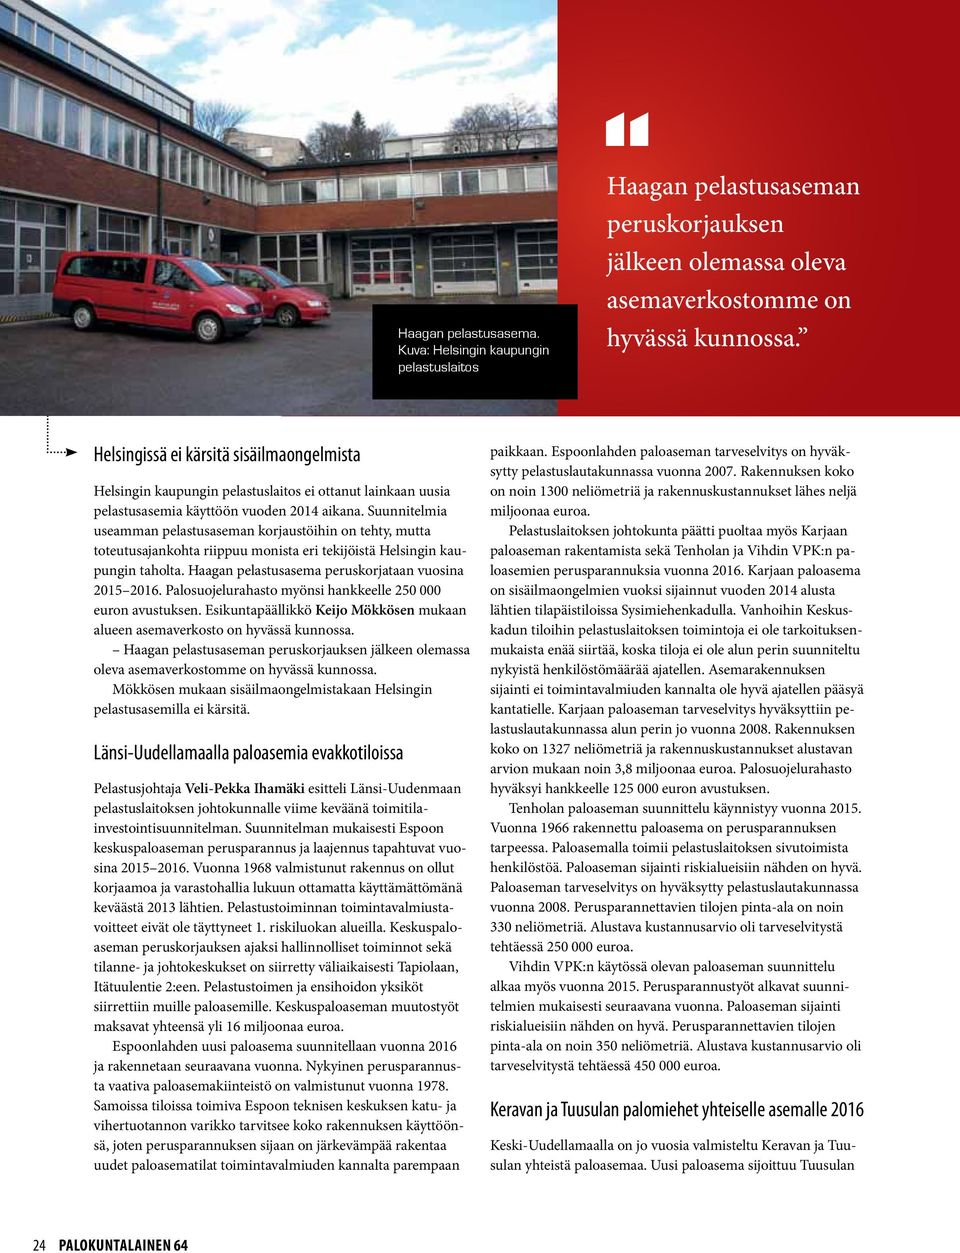 Suunnitelmia useamman pelastusaseman korjaustöihin on tehty, mutta toteutusajankohta riippuu monista eri tekijöistä Helsingin kaupungin taholta. Haagan pelastusasema peruskorjataan vuosina 2015 2016.